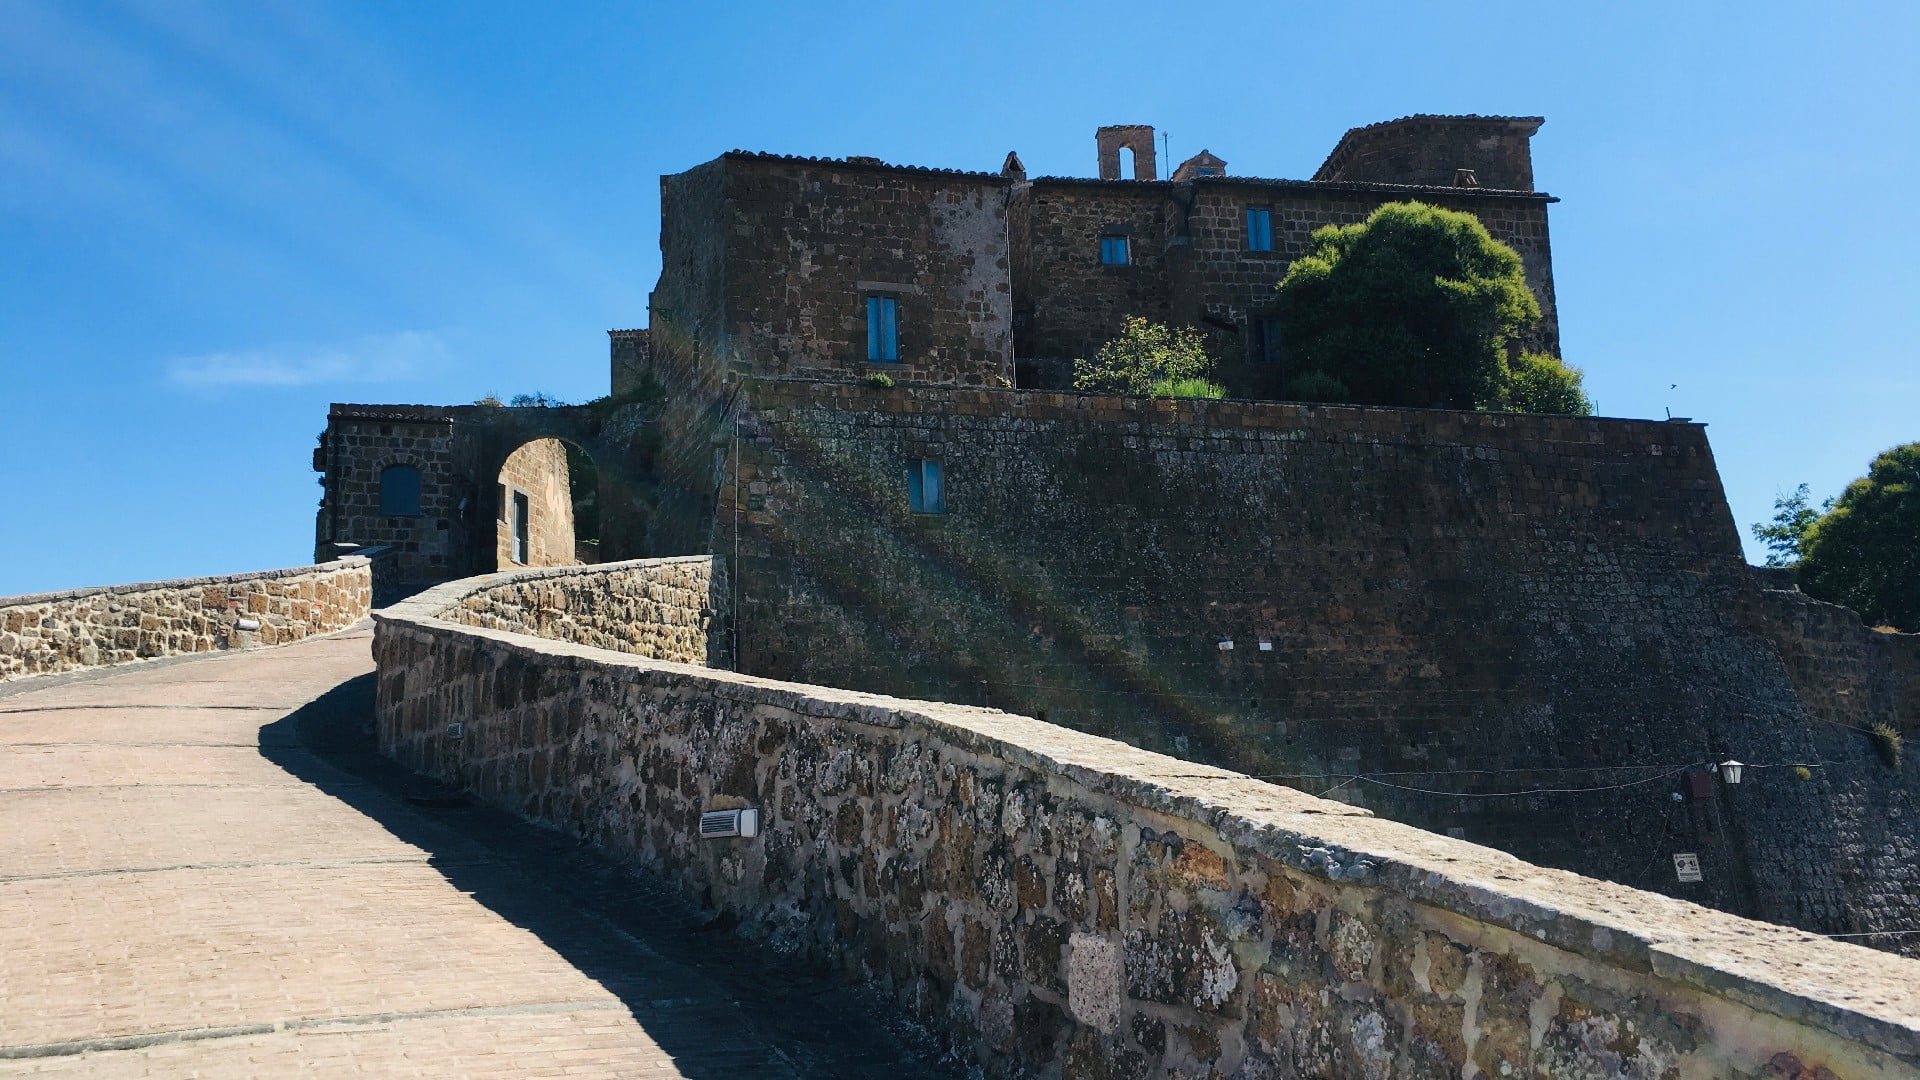 Una passeggiata che accompagna il turista all'entrata del borgo fantasma di Celleno. Si vede sullo sfondo l'arco dell'entrata al borgo e accanto spiccano le case in mattoni.